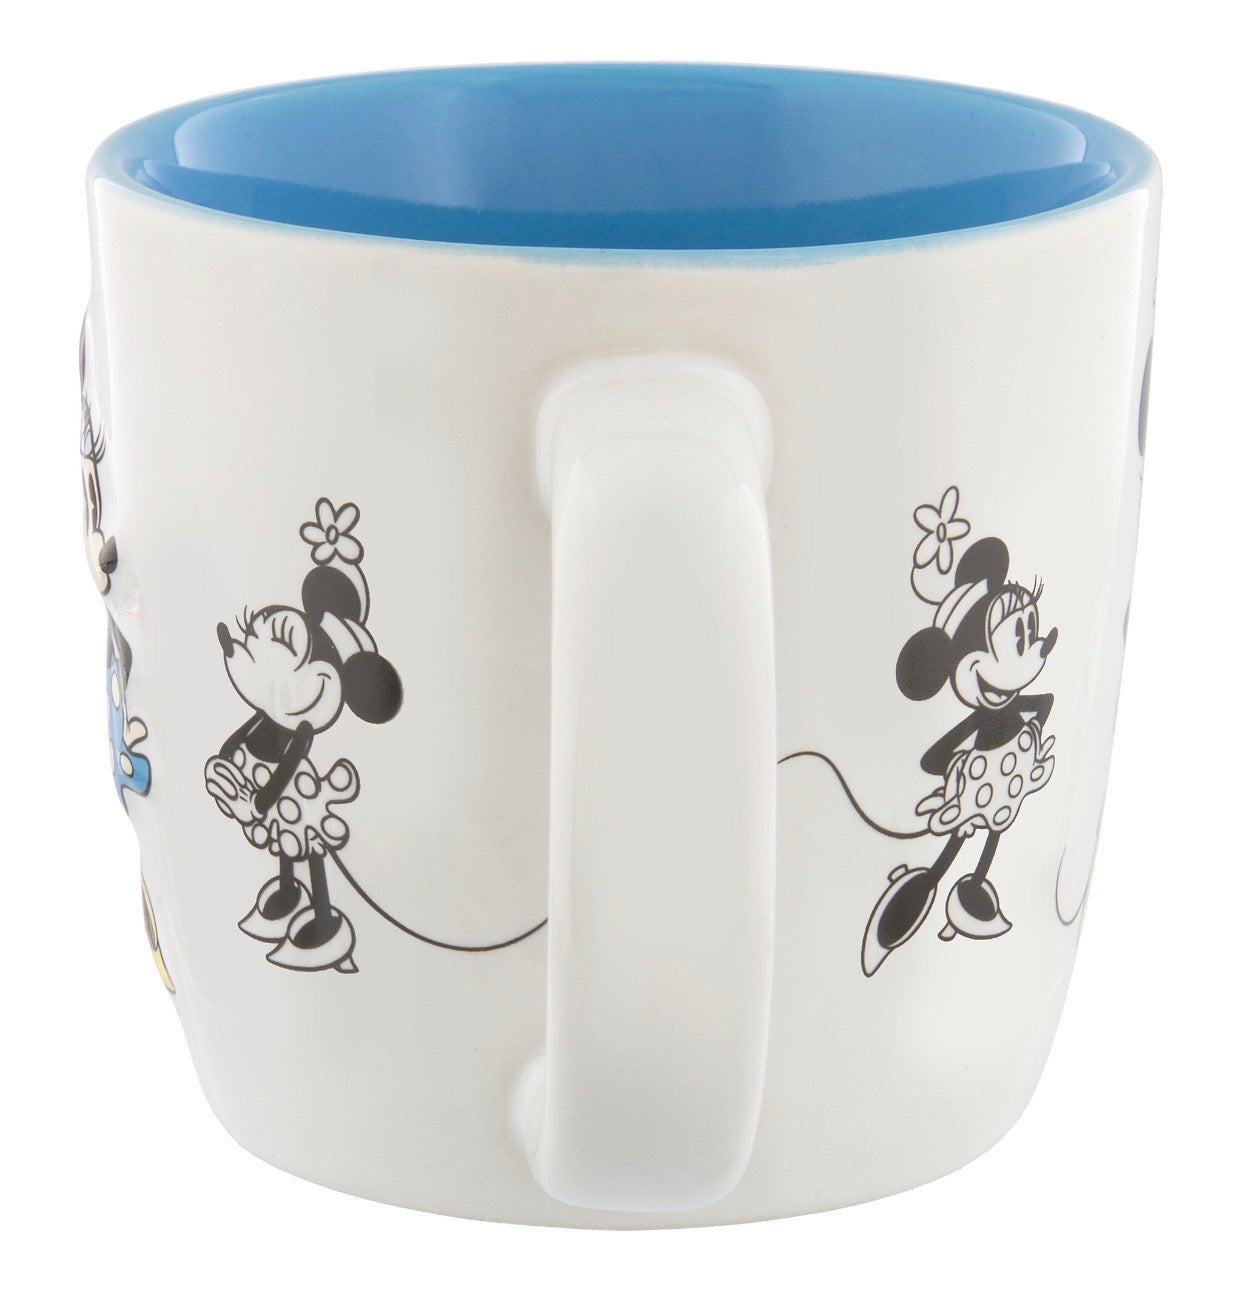 Disney Parks Minnie Mouse Retro 3D Ceramic Mug New